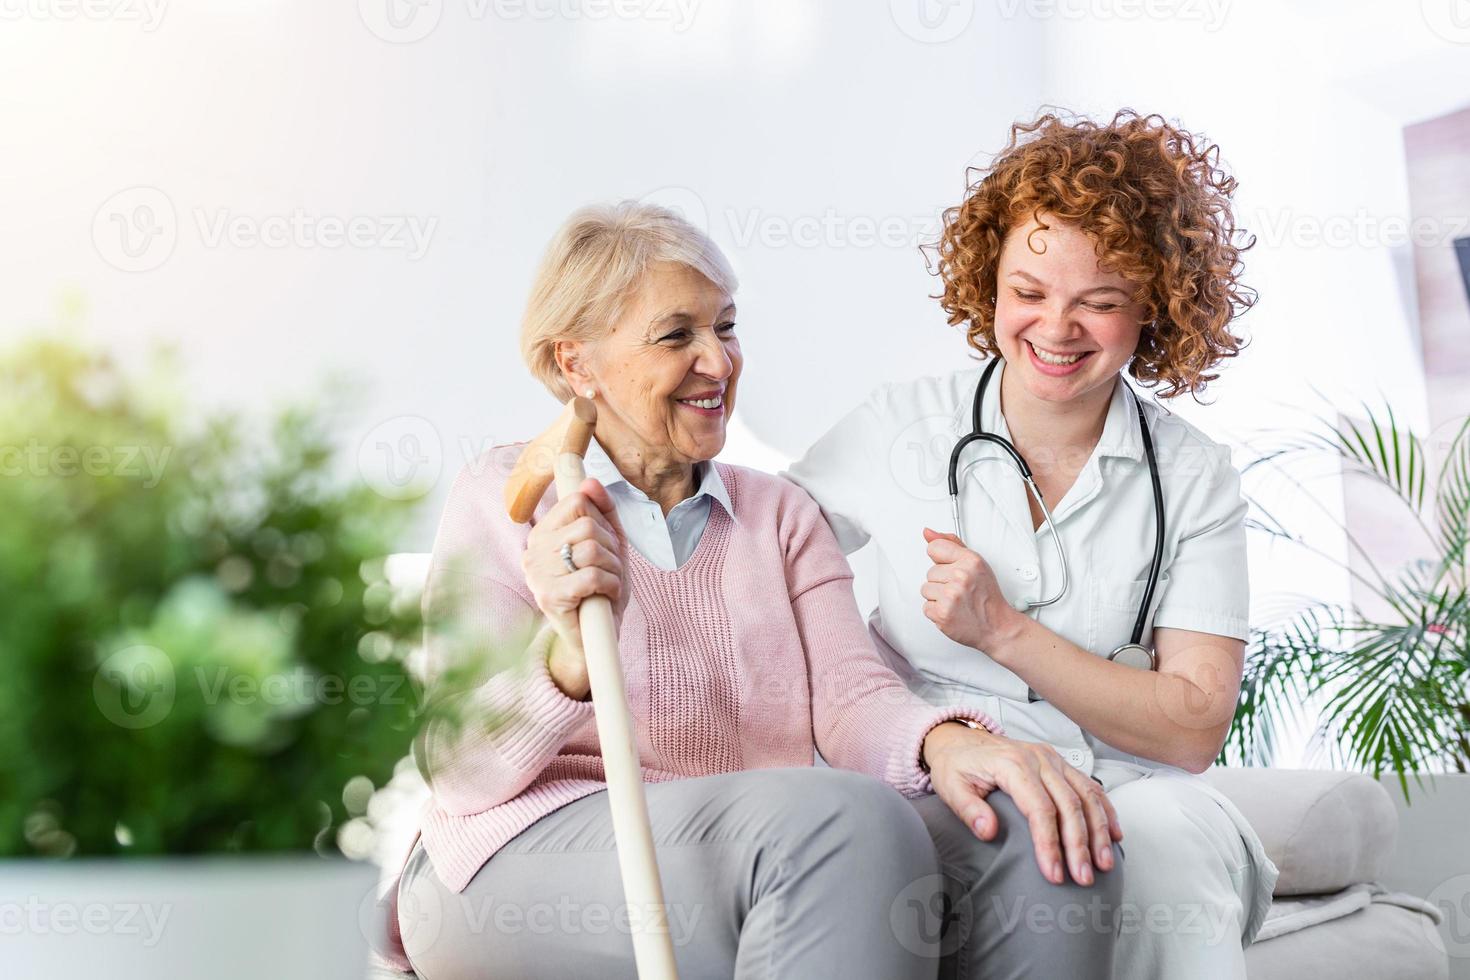 vriendelijk verhouding tussen glimlachen verzorger in uniform en gelukkig ouderen vrouw. ondersteunend jong verpleegster op zoek Bij senior vrouw. jong zorgzaam lief verzorger en gelukkig afdeling foto